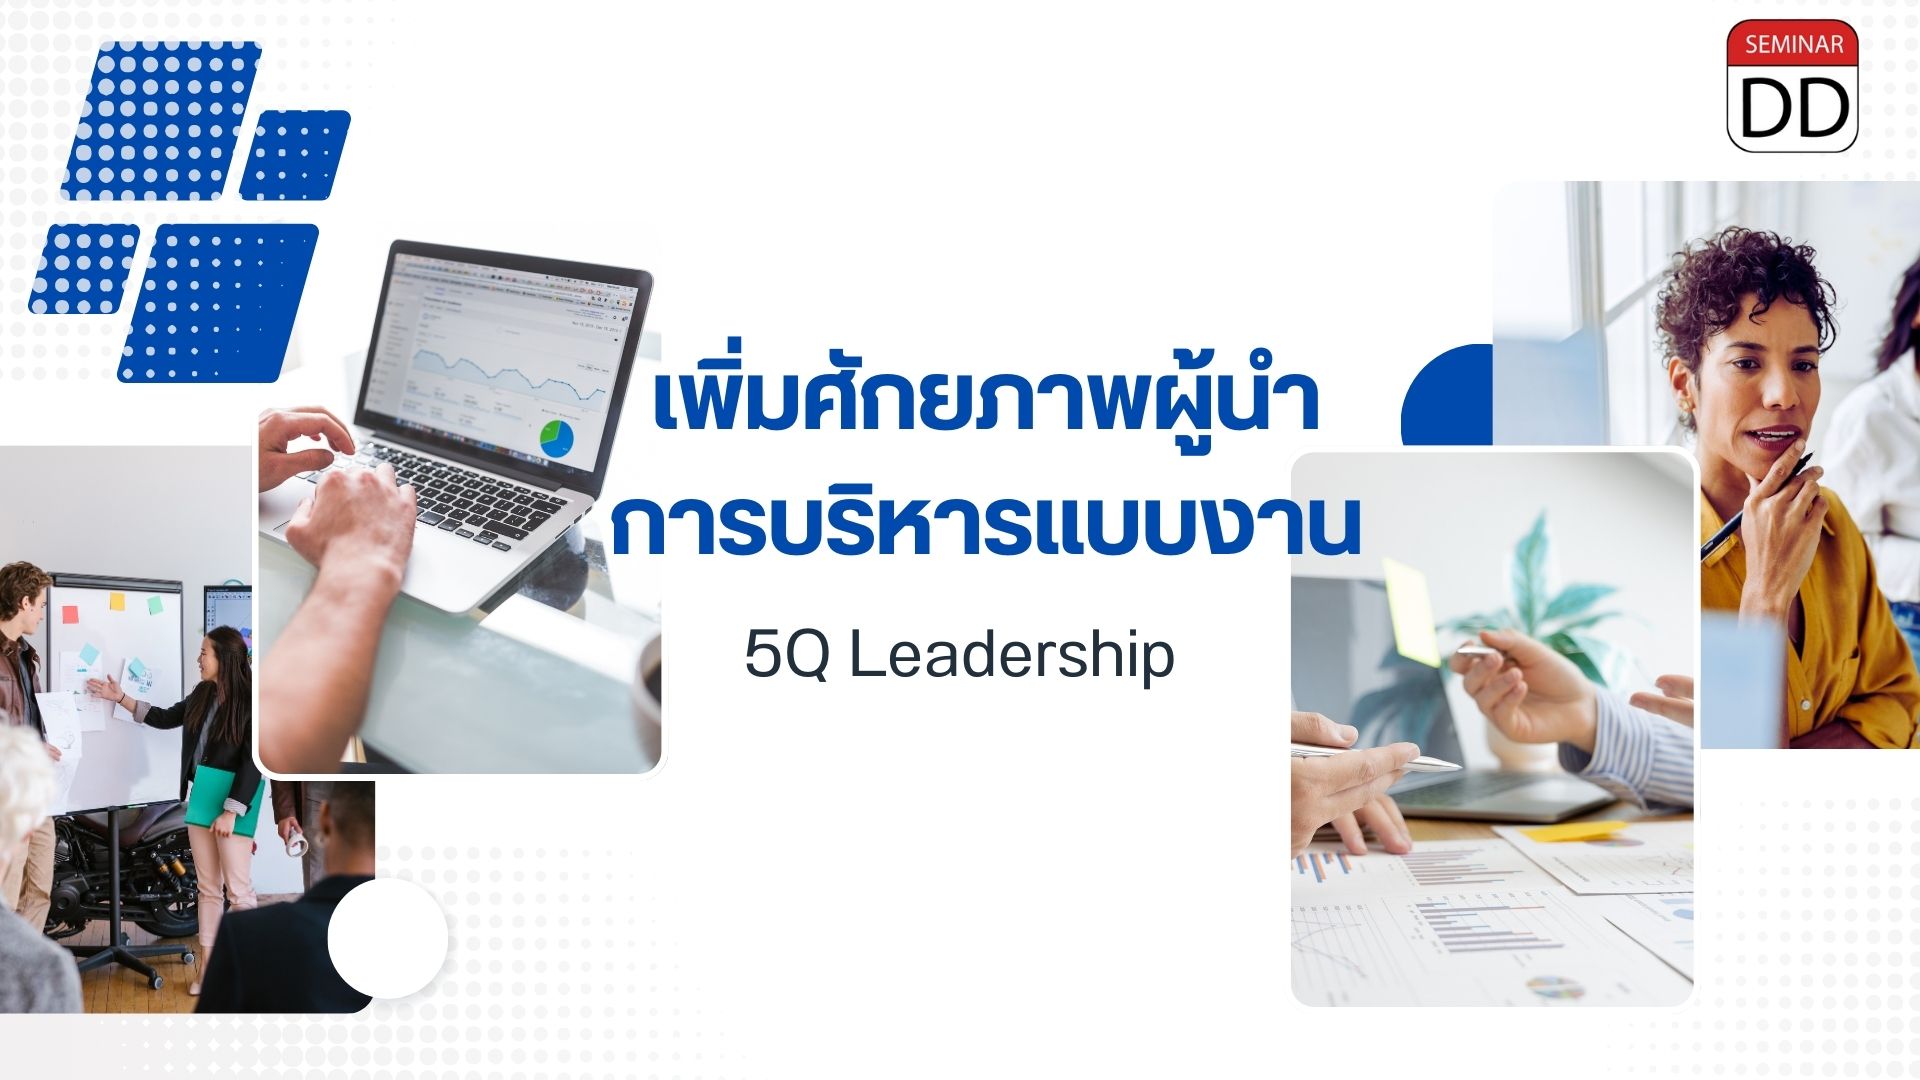 หลักสูตร เพิ่มศักยภาพผู้นำการบริหารแบบงาน  (5Q Leadership)